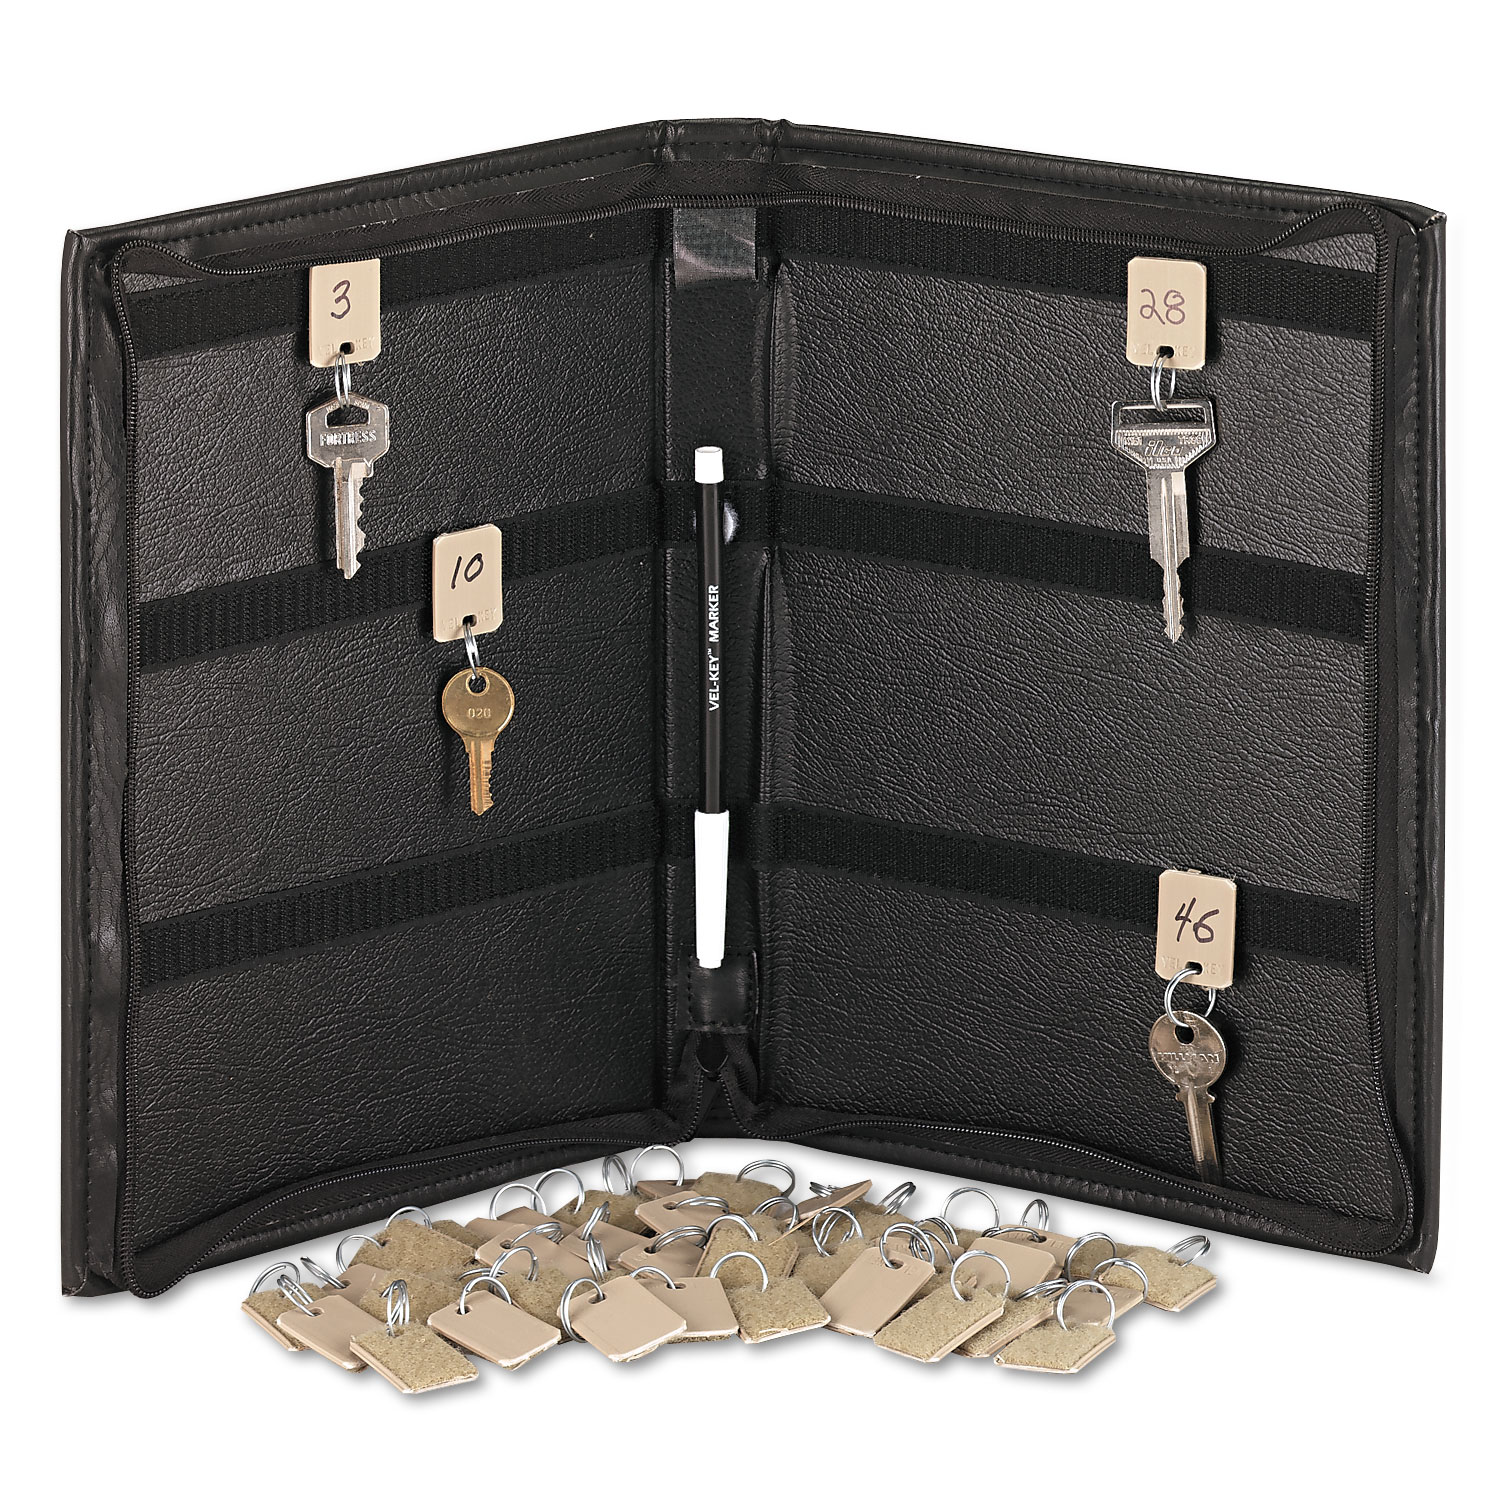 Security-Backed Zippered Case, 48-Key, Vinyl, Black, 9 x 1 x 11 5/8